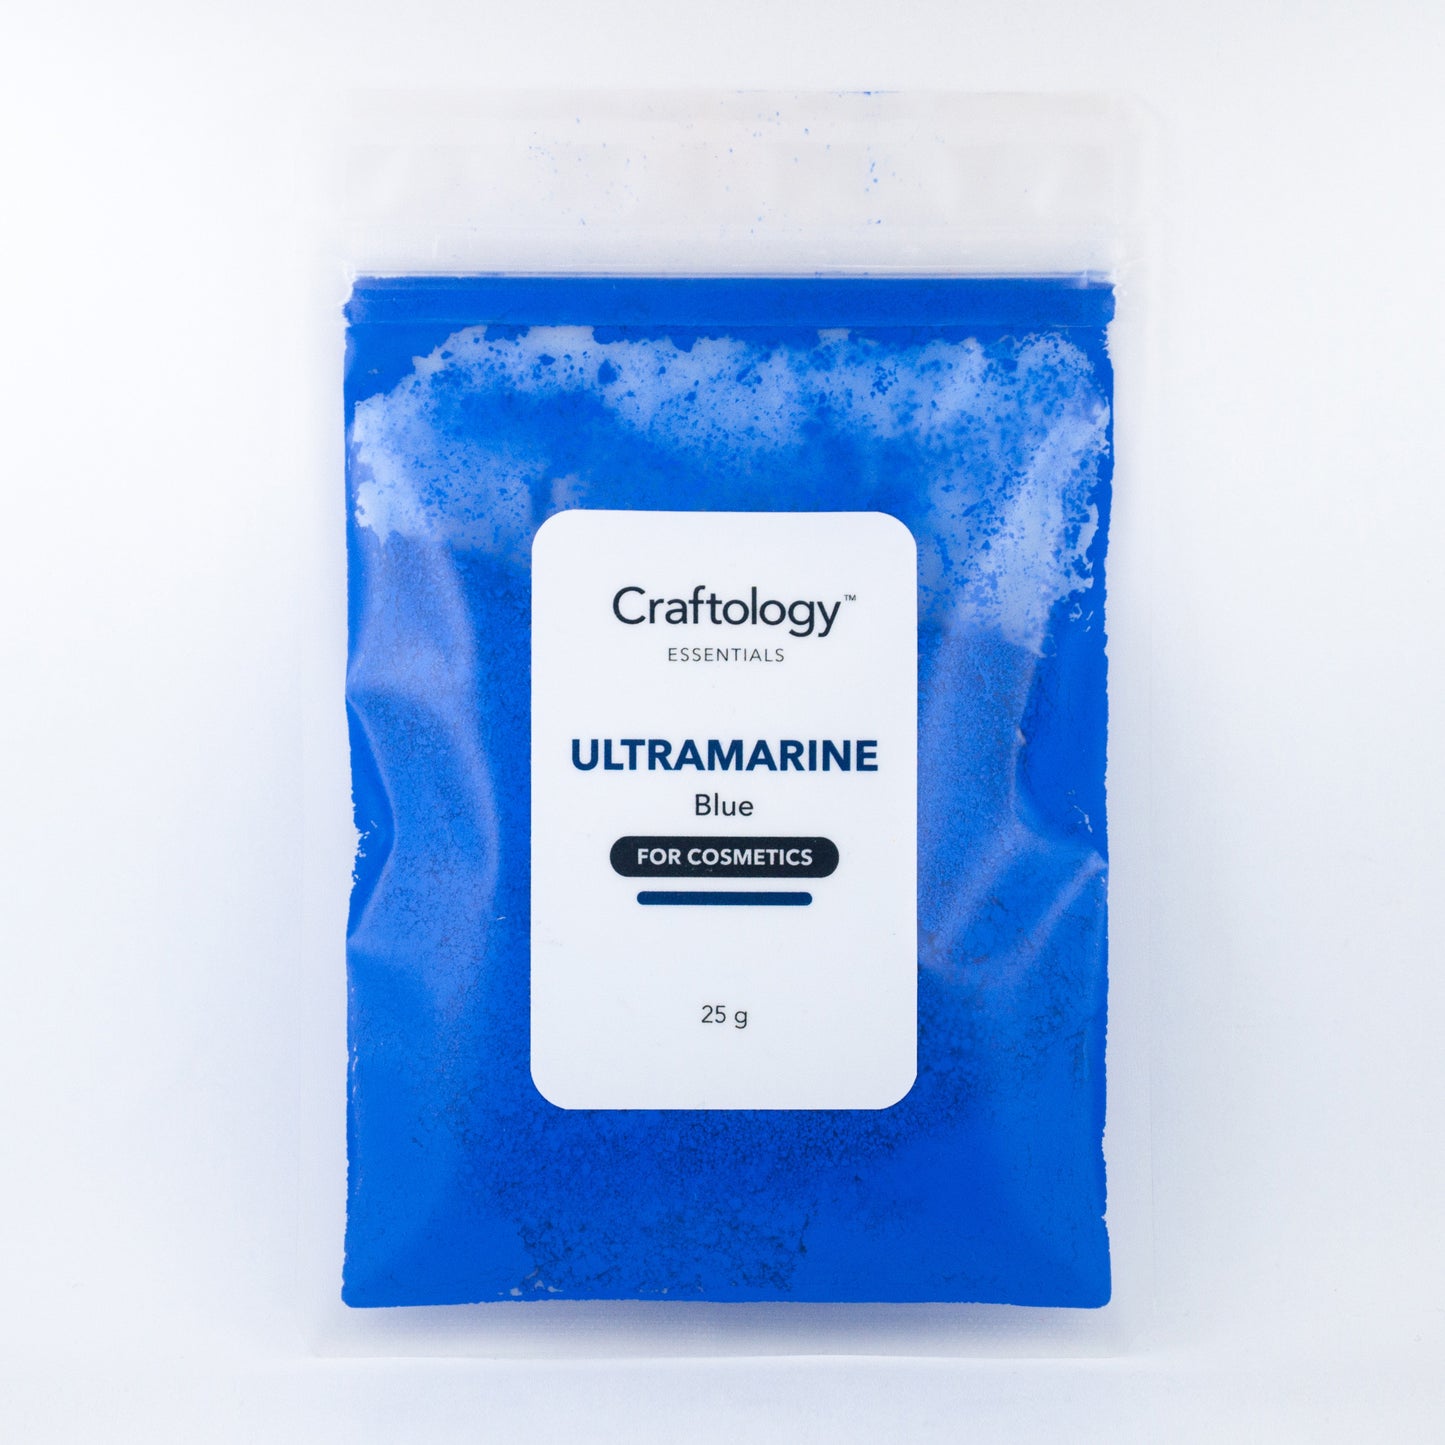 Ultramarine Blue - Craftology Essentials - Philippines